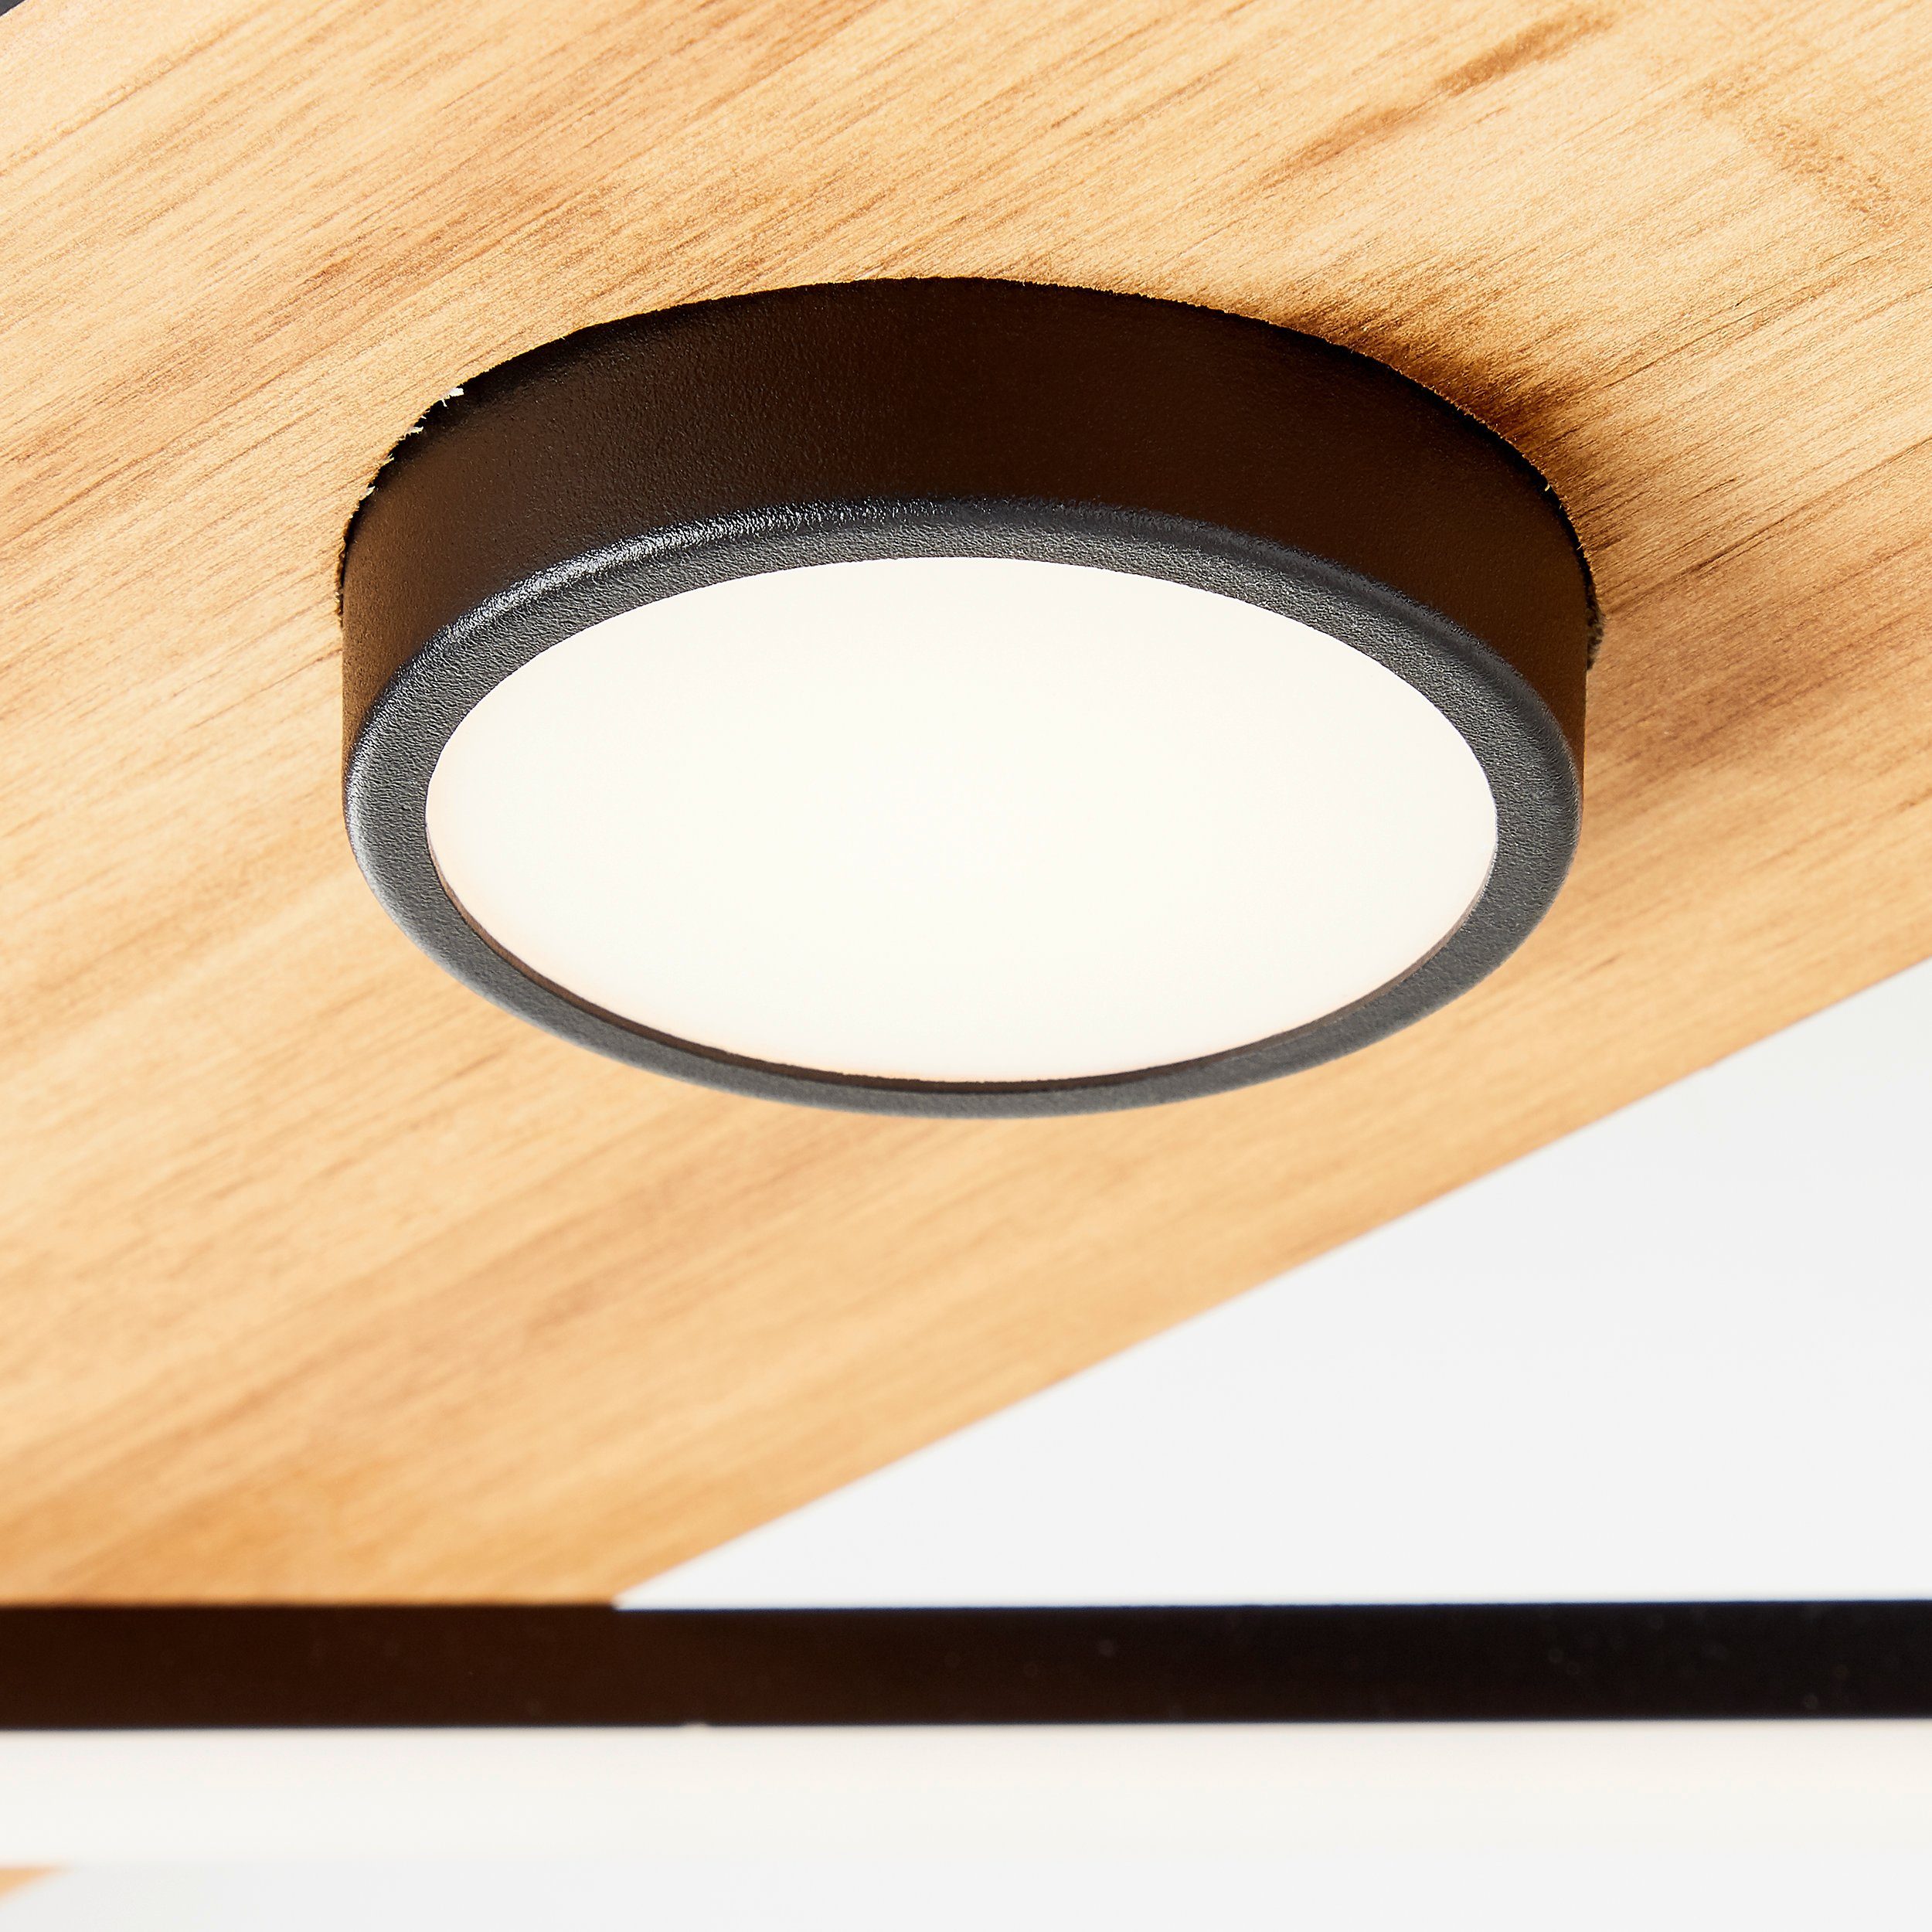 Holz/Metall/Kunstst Deckenleuchte holz/schwarz, Deckenleuchte Woodbridge Woodbridge, Brilliant LED 70x35cm